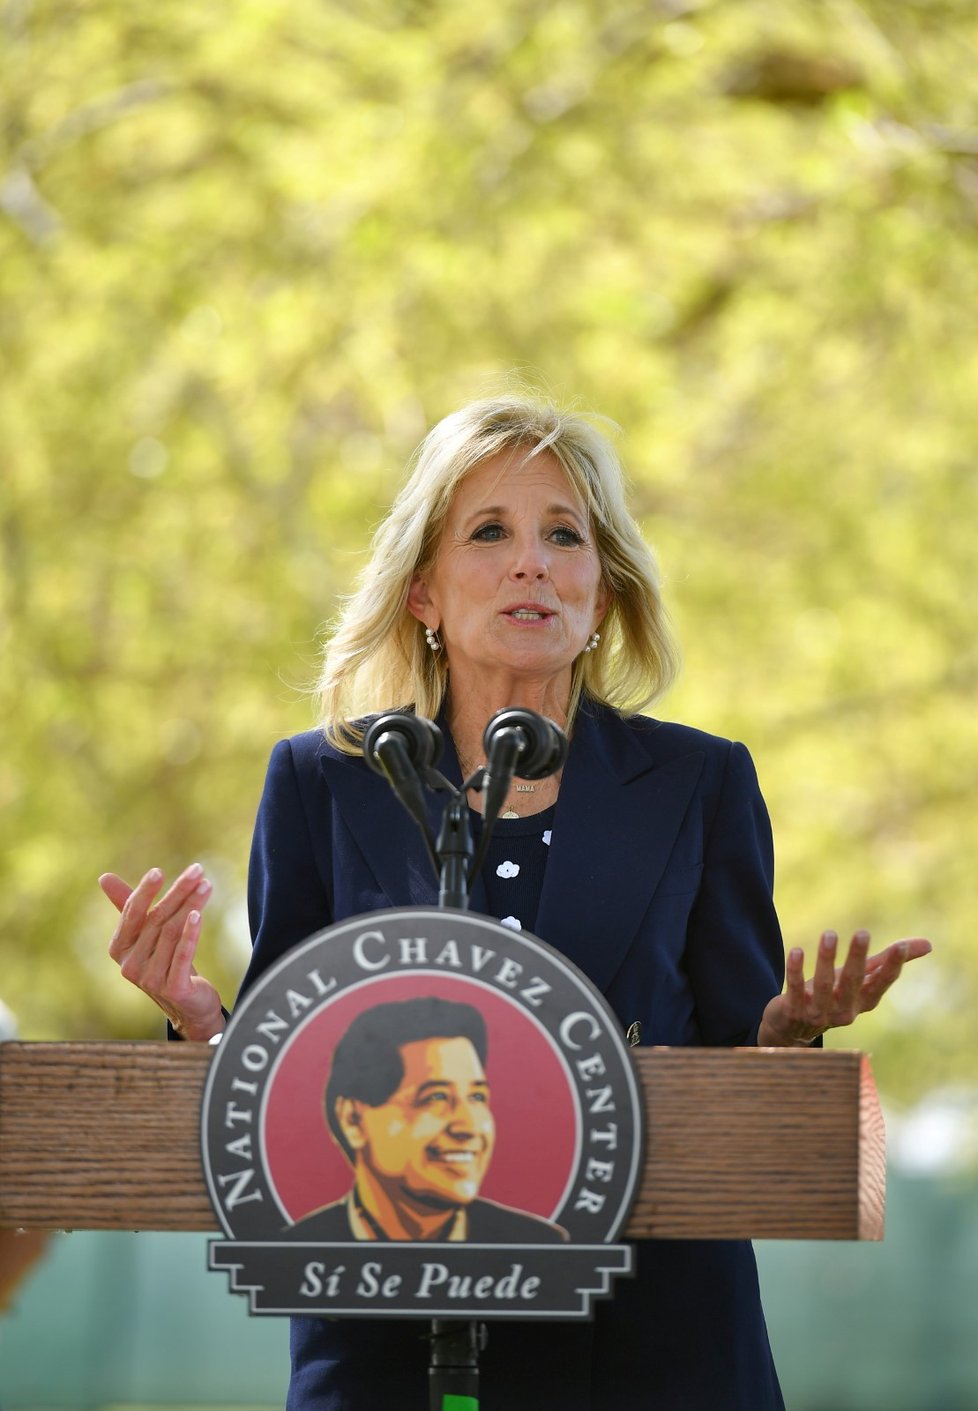 První dáma Spojených států Jill Bidenová během návštěvy Národního památníku Césara Cháveze v kalifornském Kern County (31. 3. 2021)